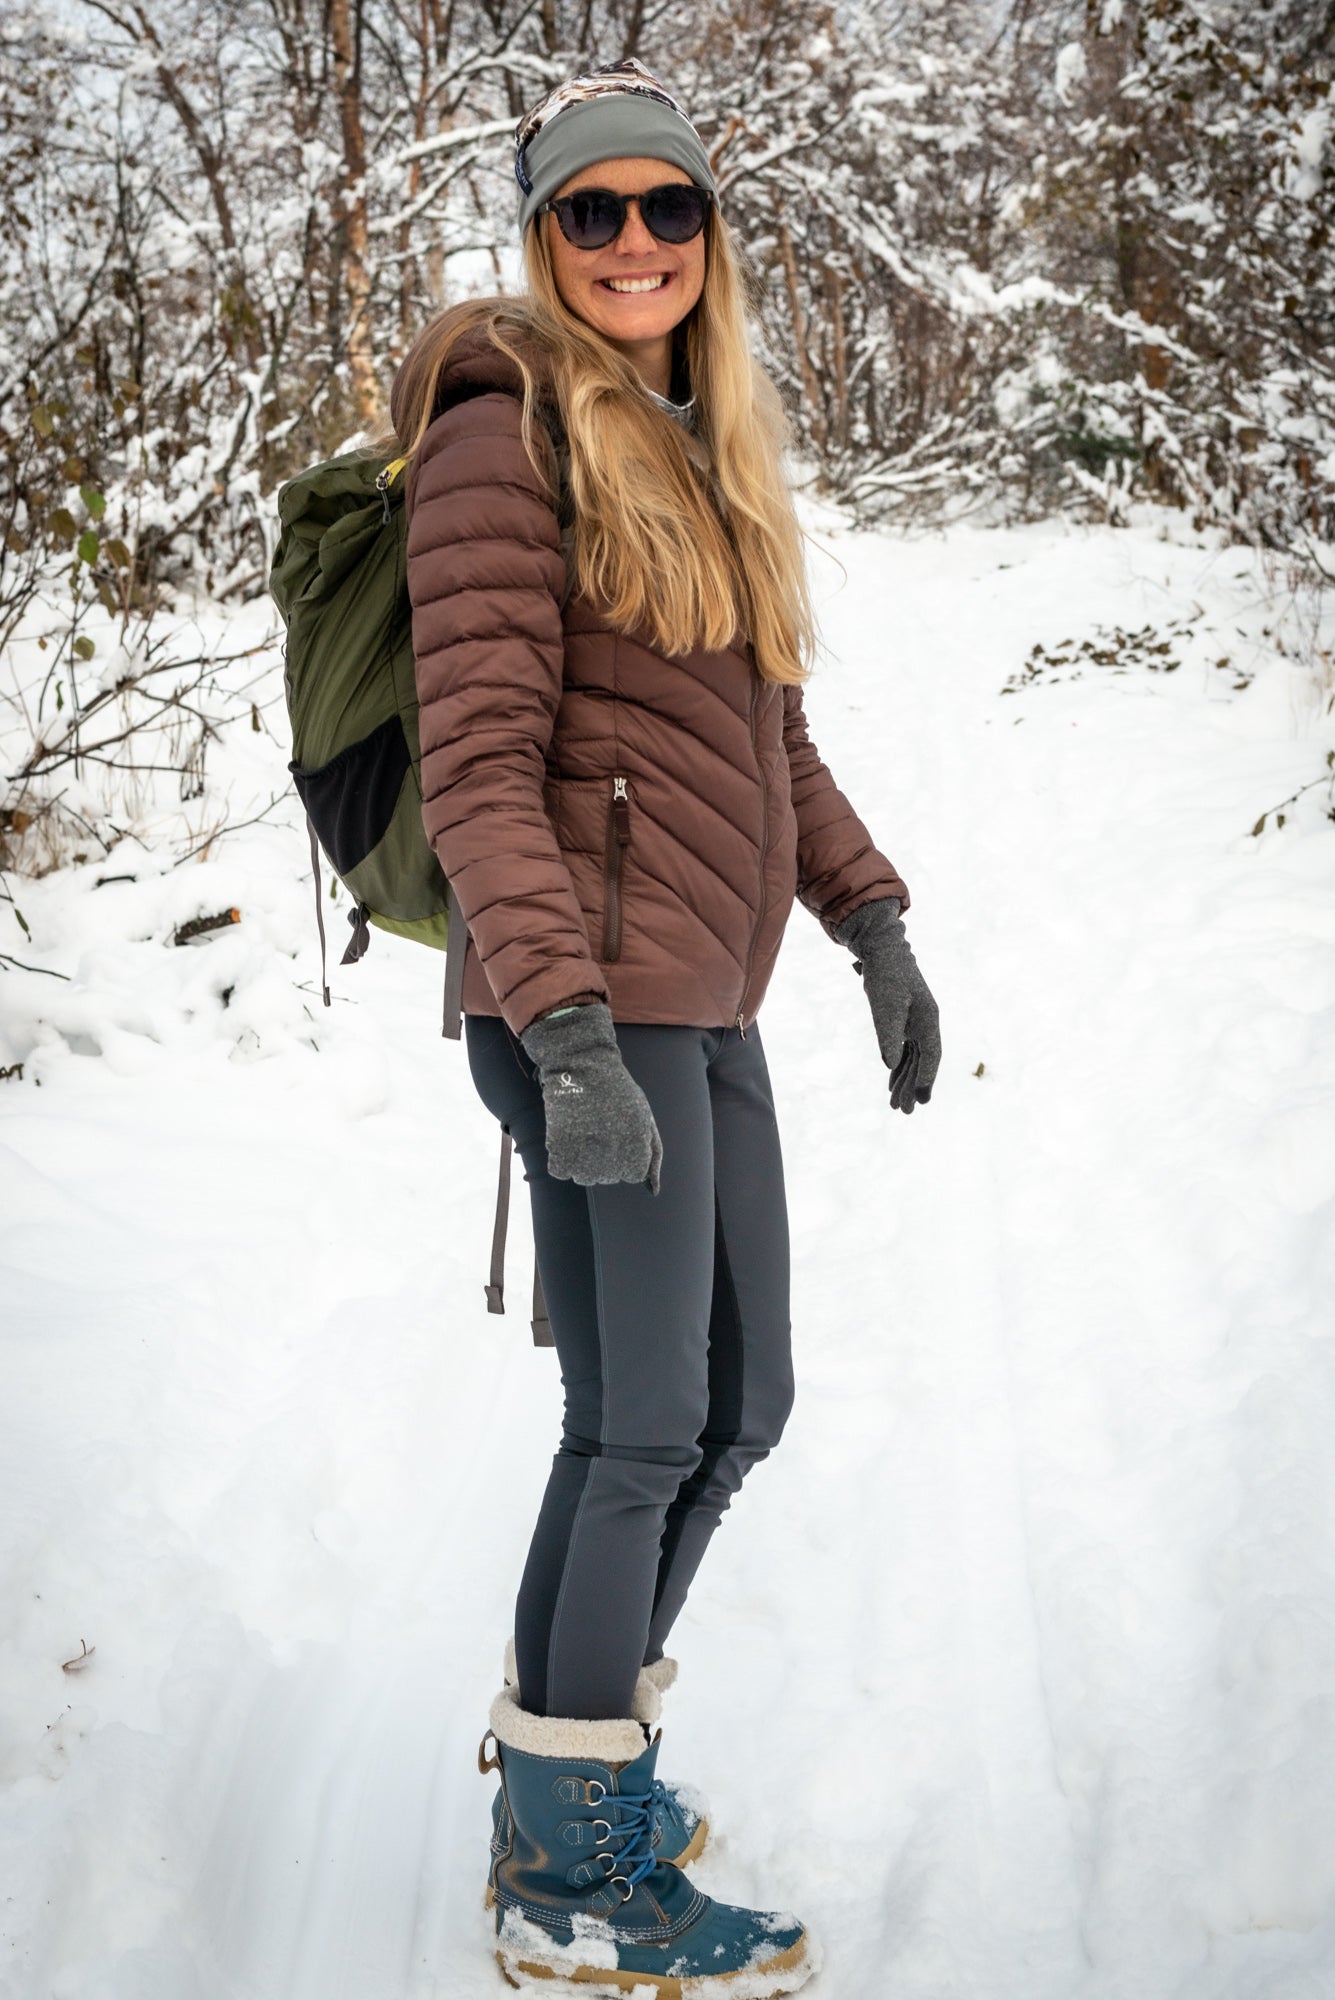 alpine fit hiking leggings on model outside walking in winter